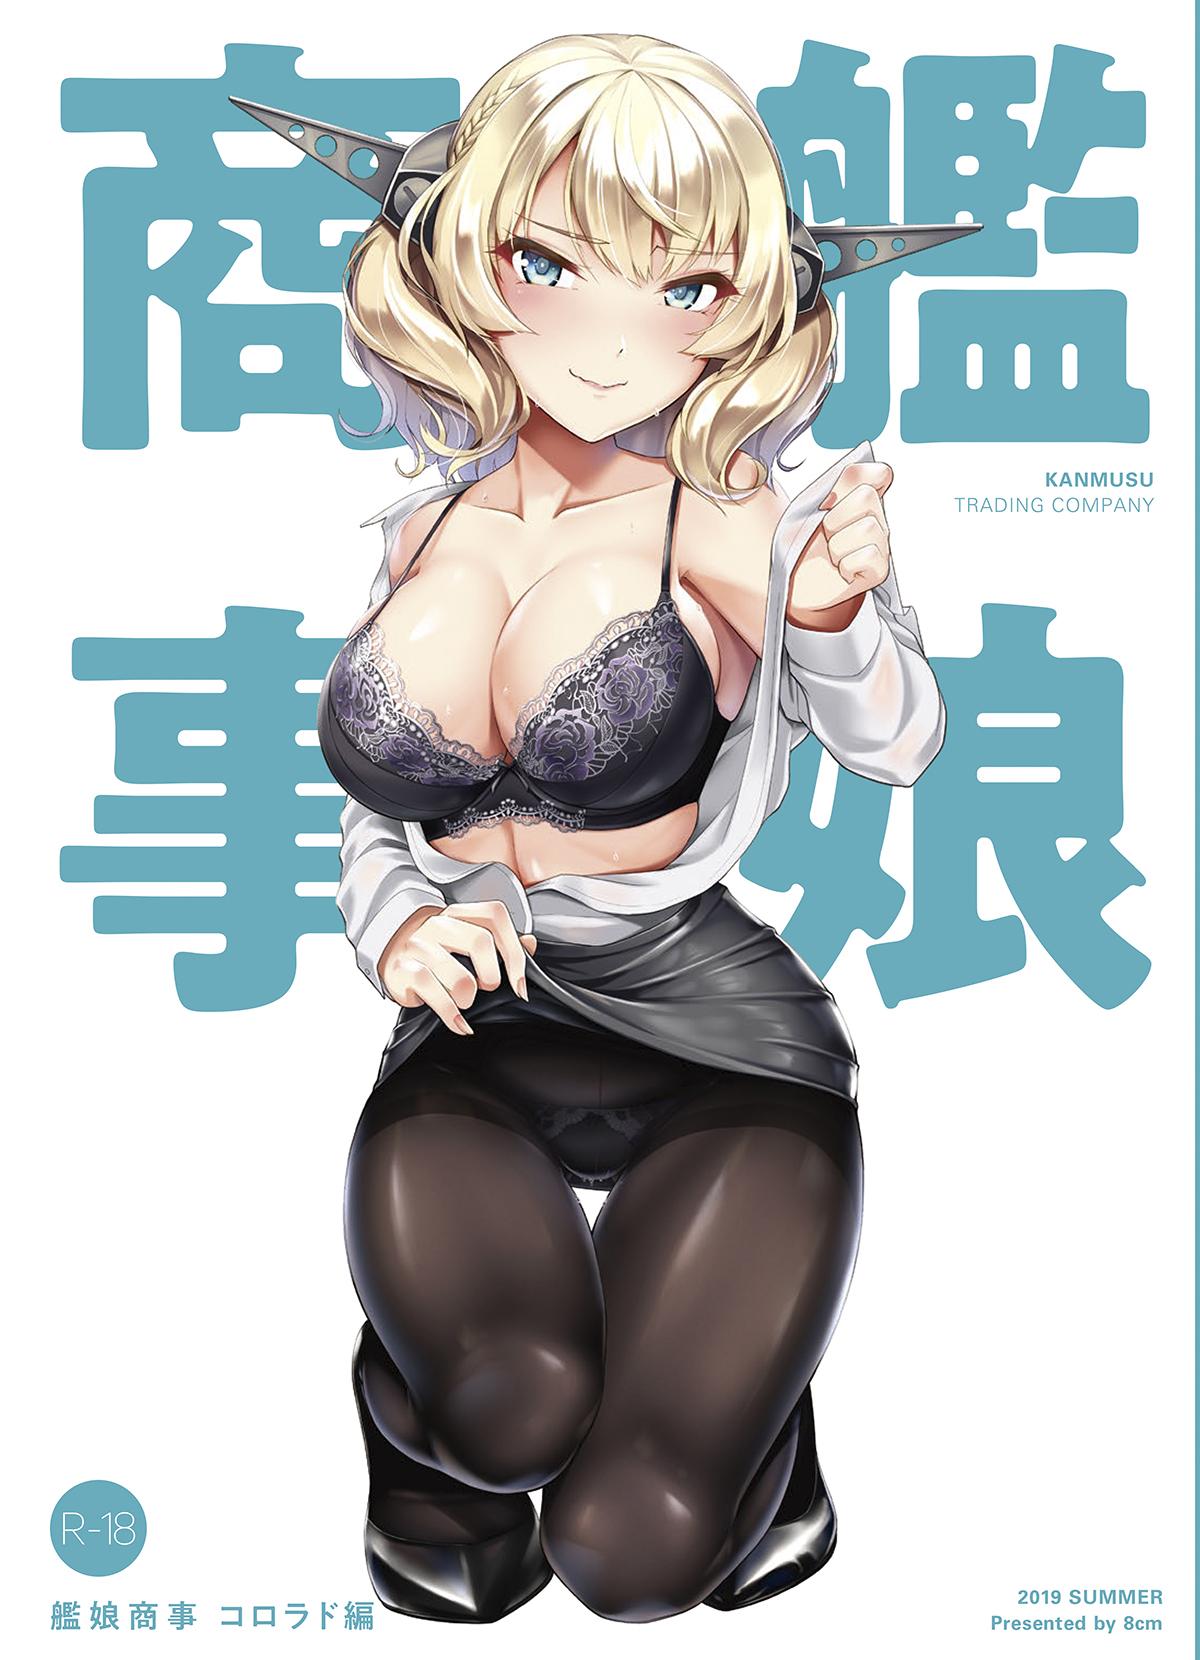 Kanmusu Shouji Colorado Hen | Ship Girl Business - Colorado Edition 0